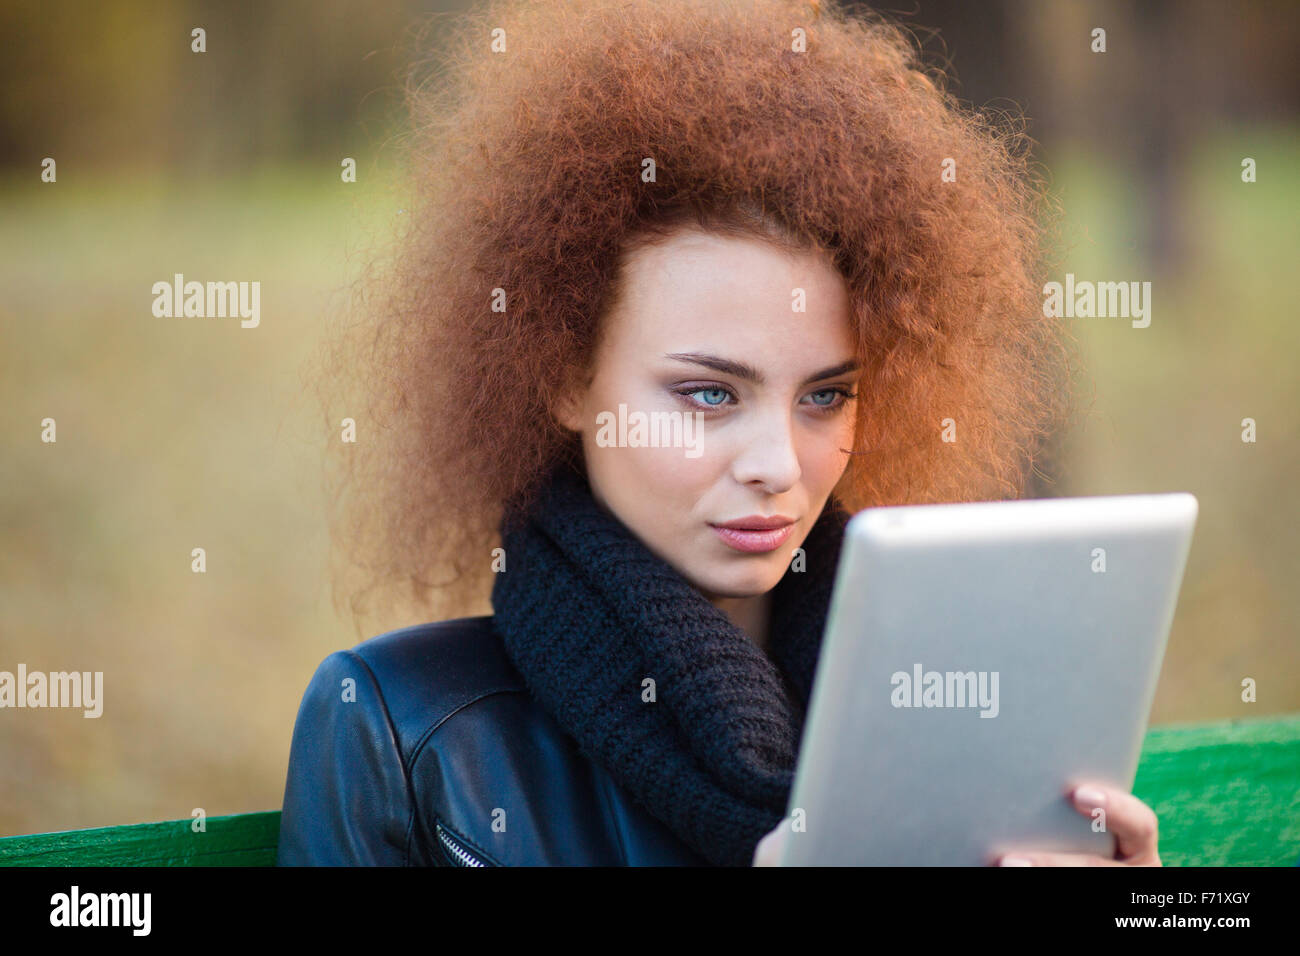 Portrait d'une belle femme avec des cheveux bouclés using tablet computer outdoors Banque D'Images